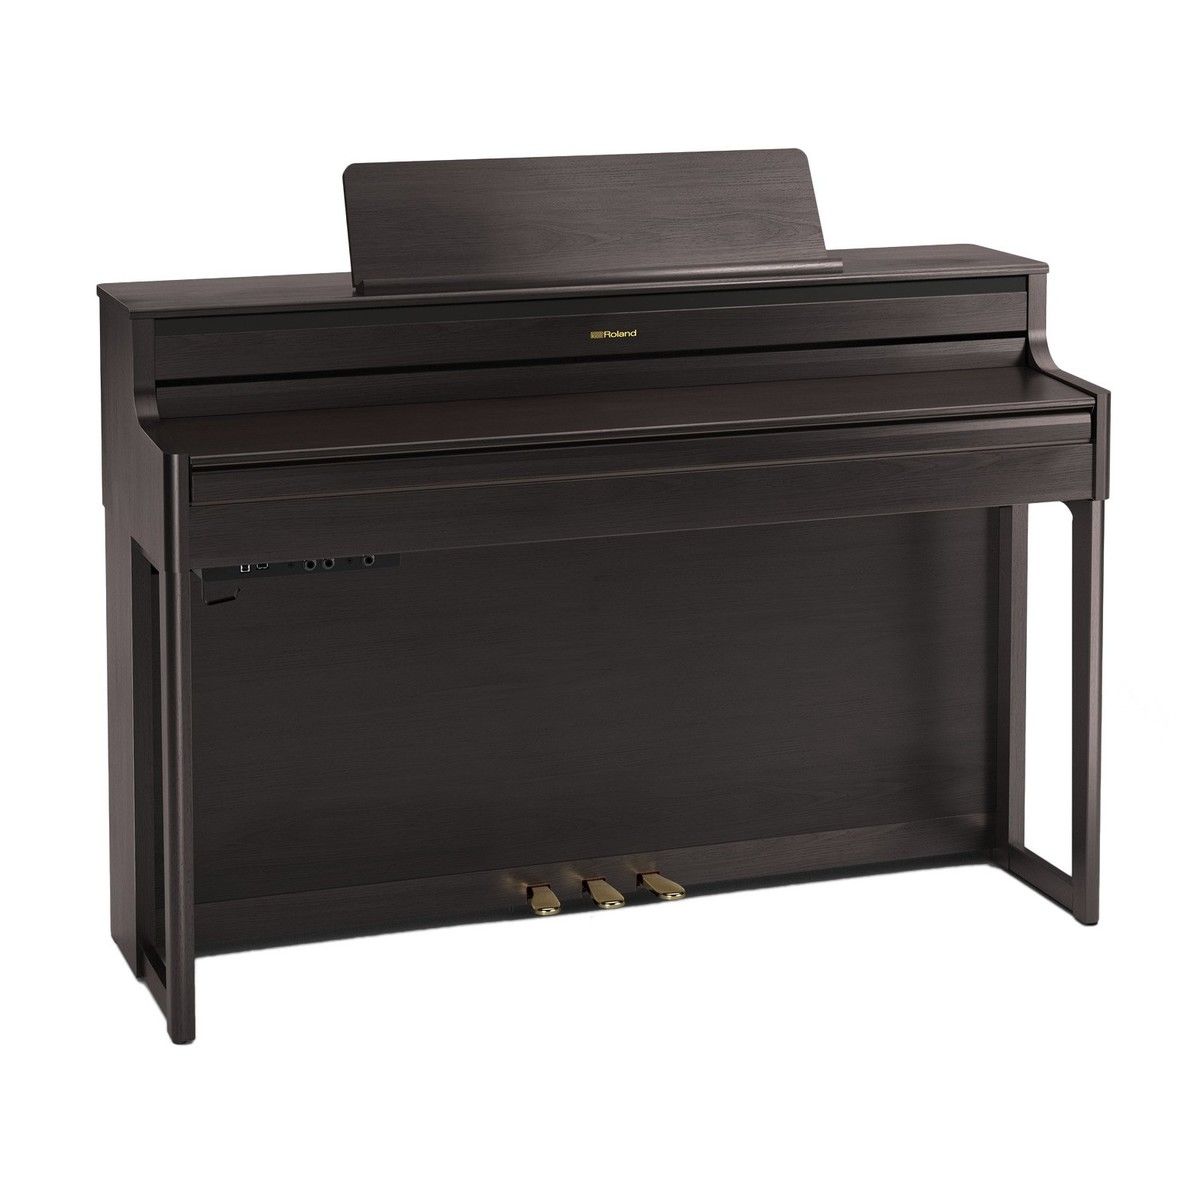 Цифровое пианино ROLAND HP704 DR SET